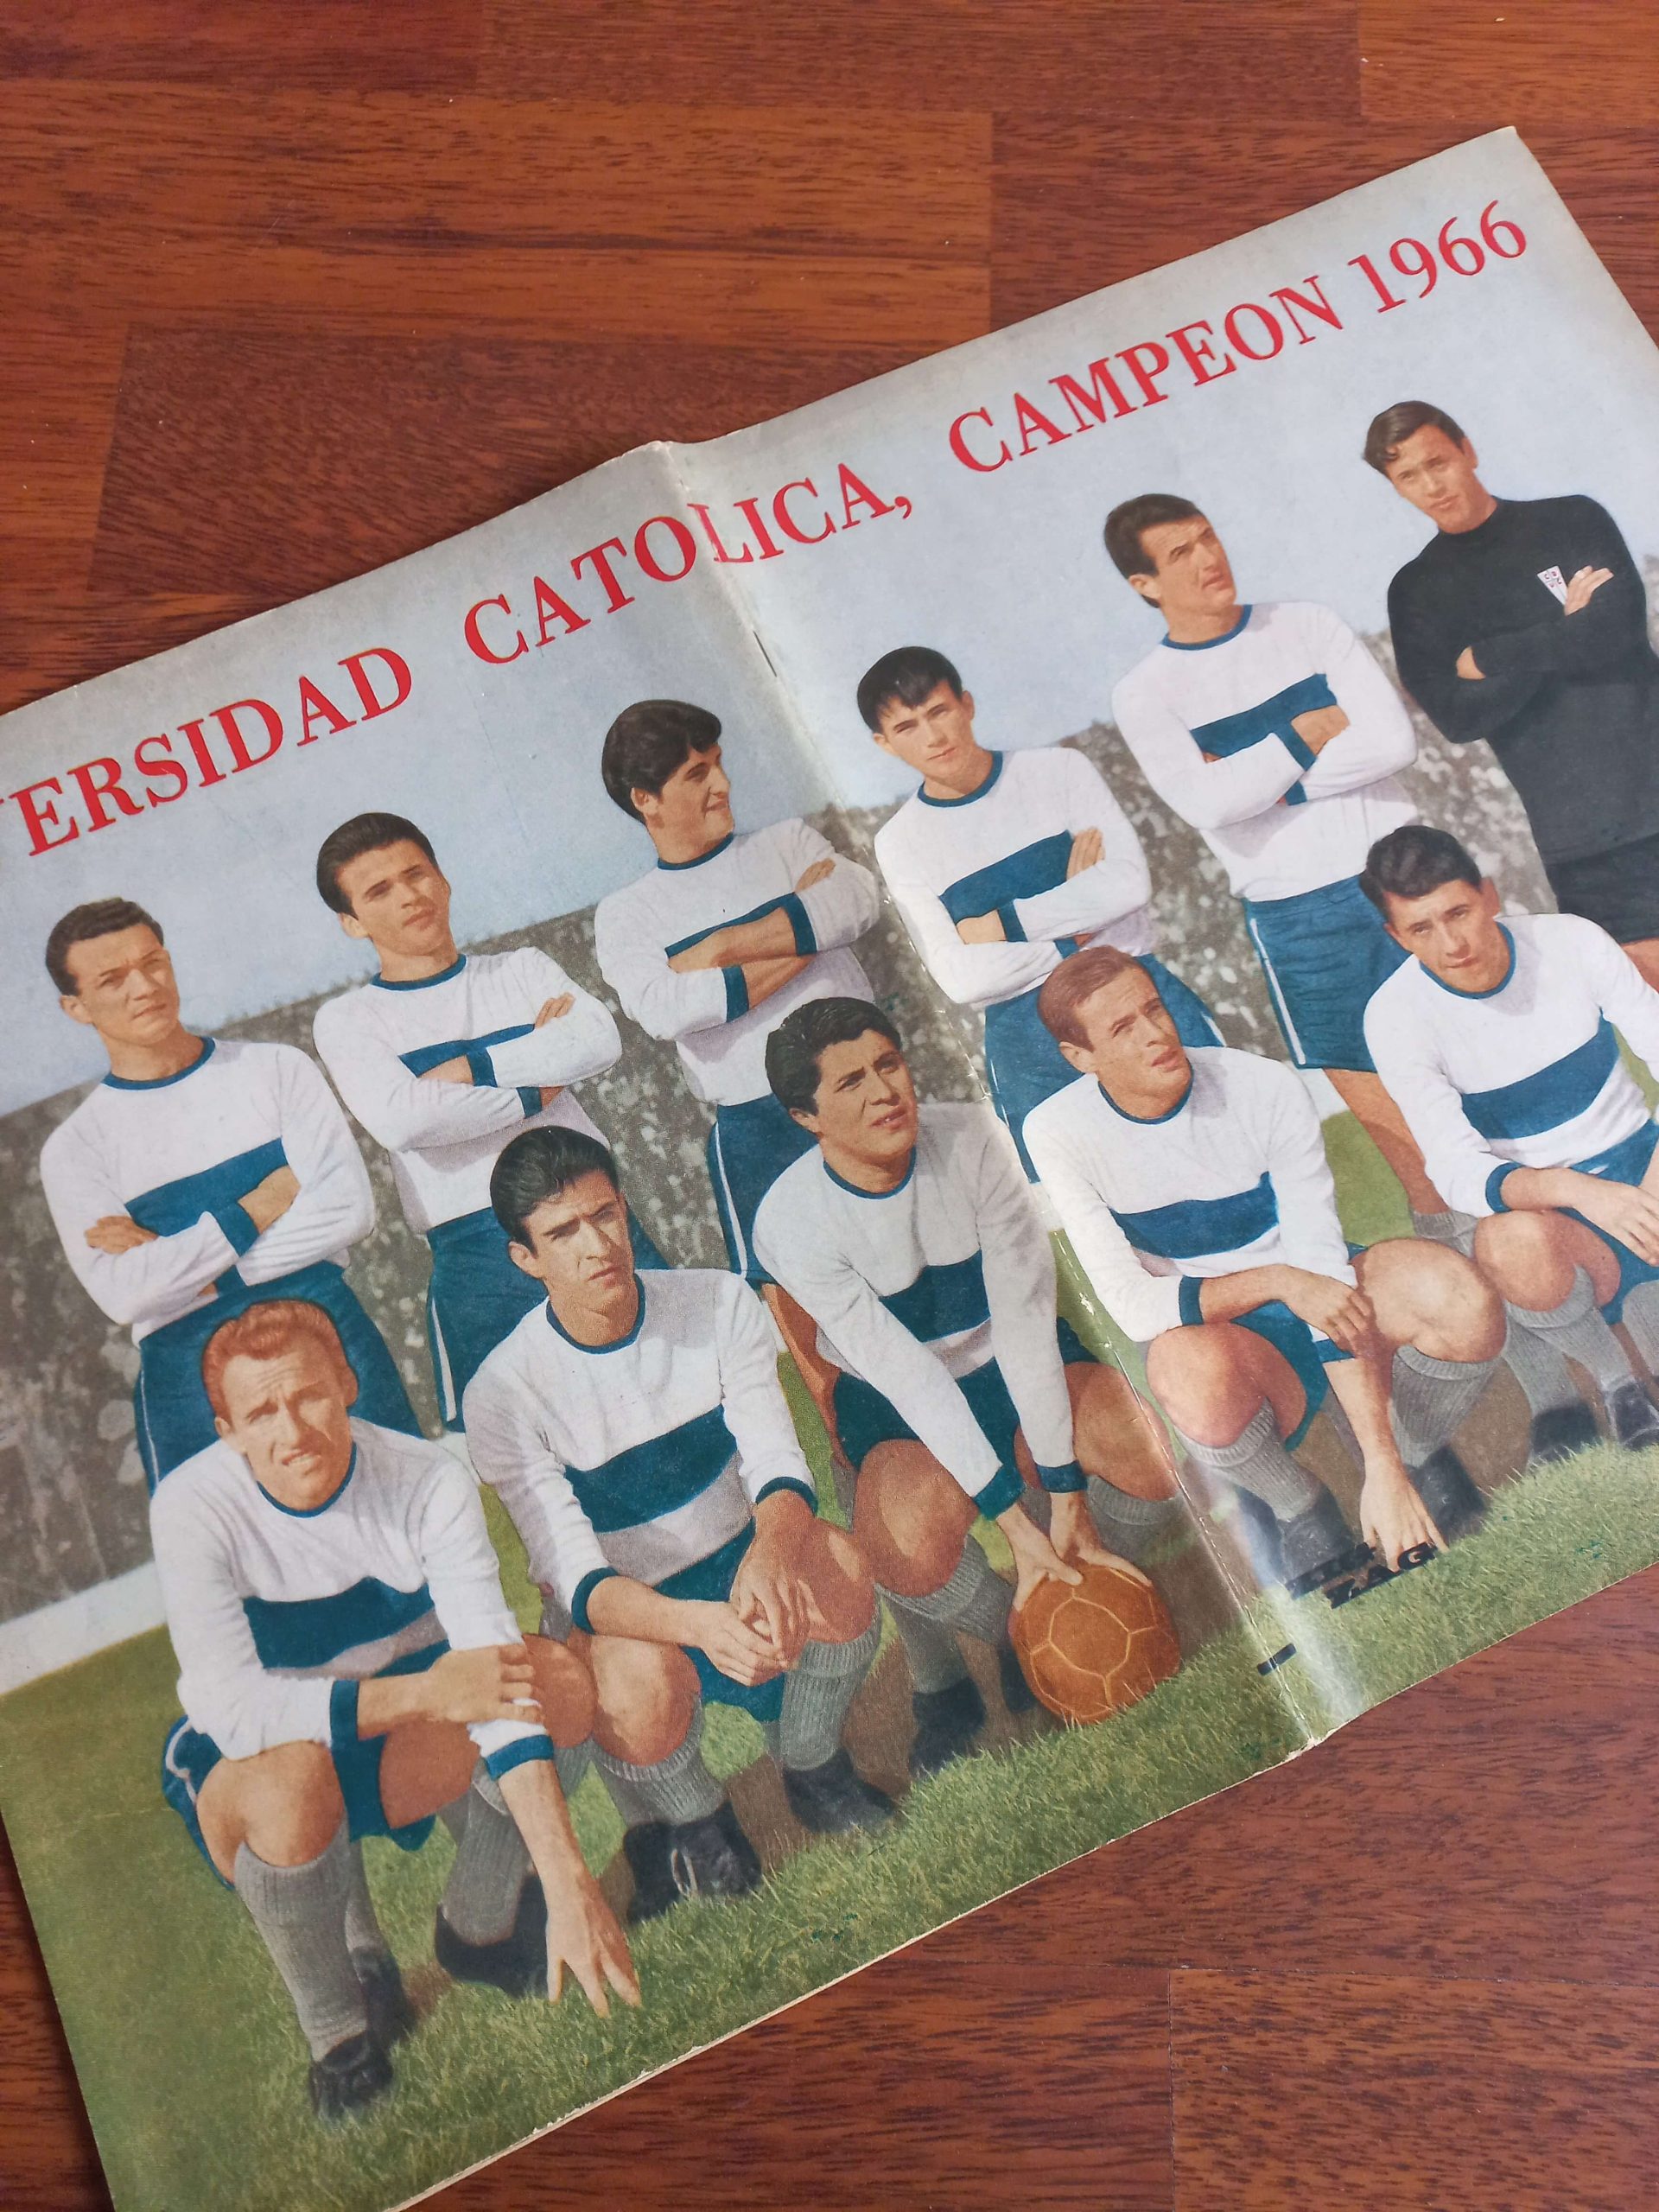 (1966) Revista Estadio Universidad Católica campeón 66